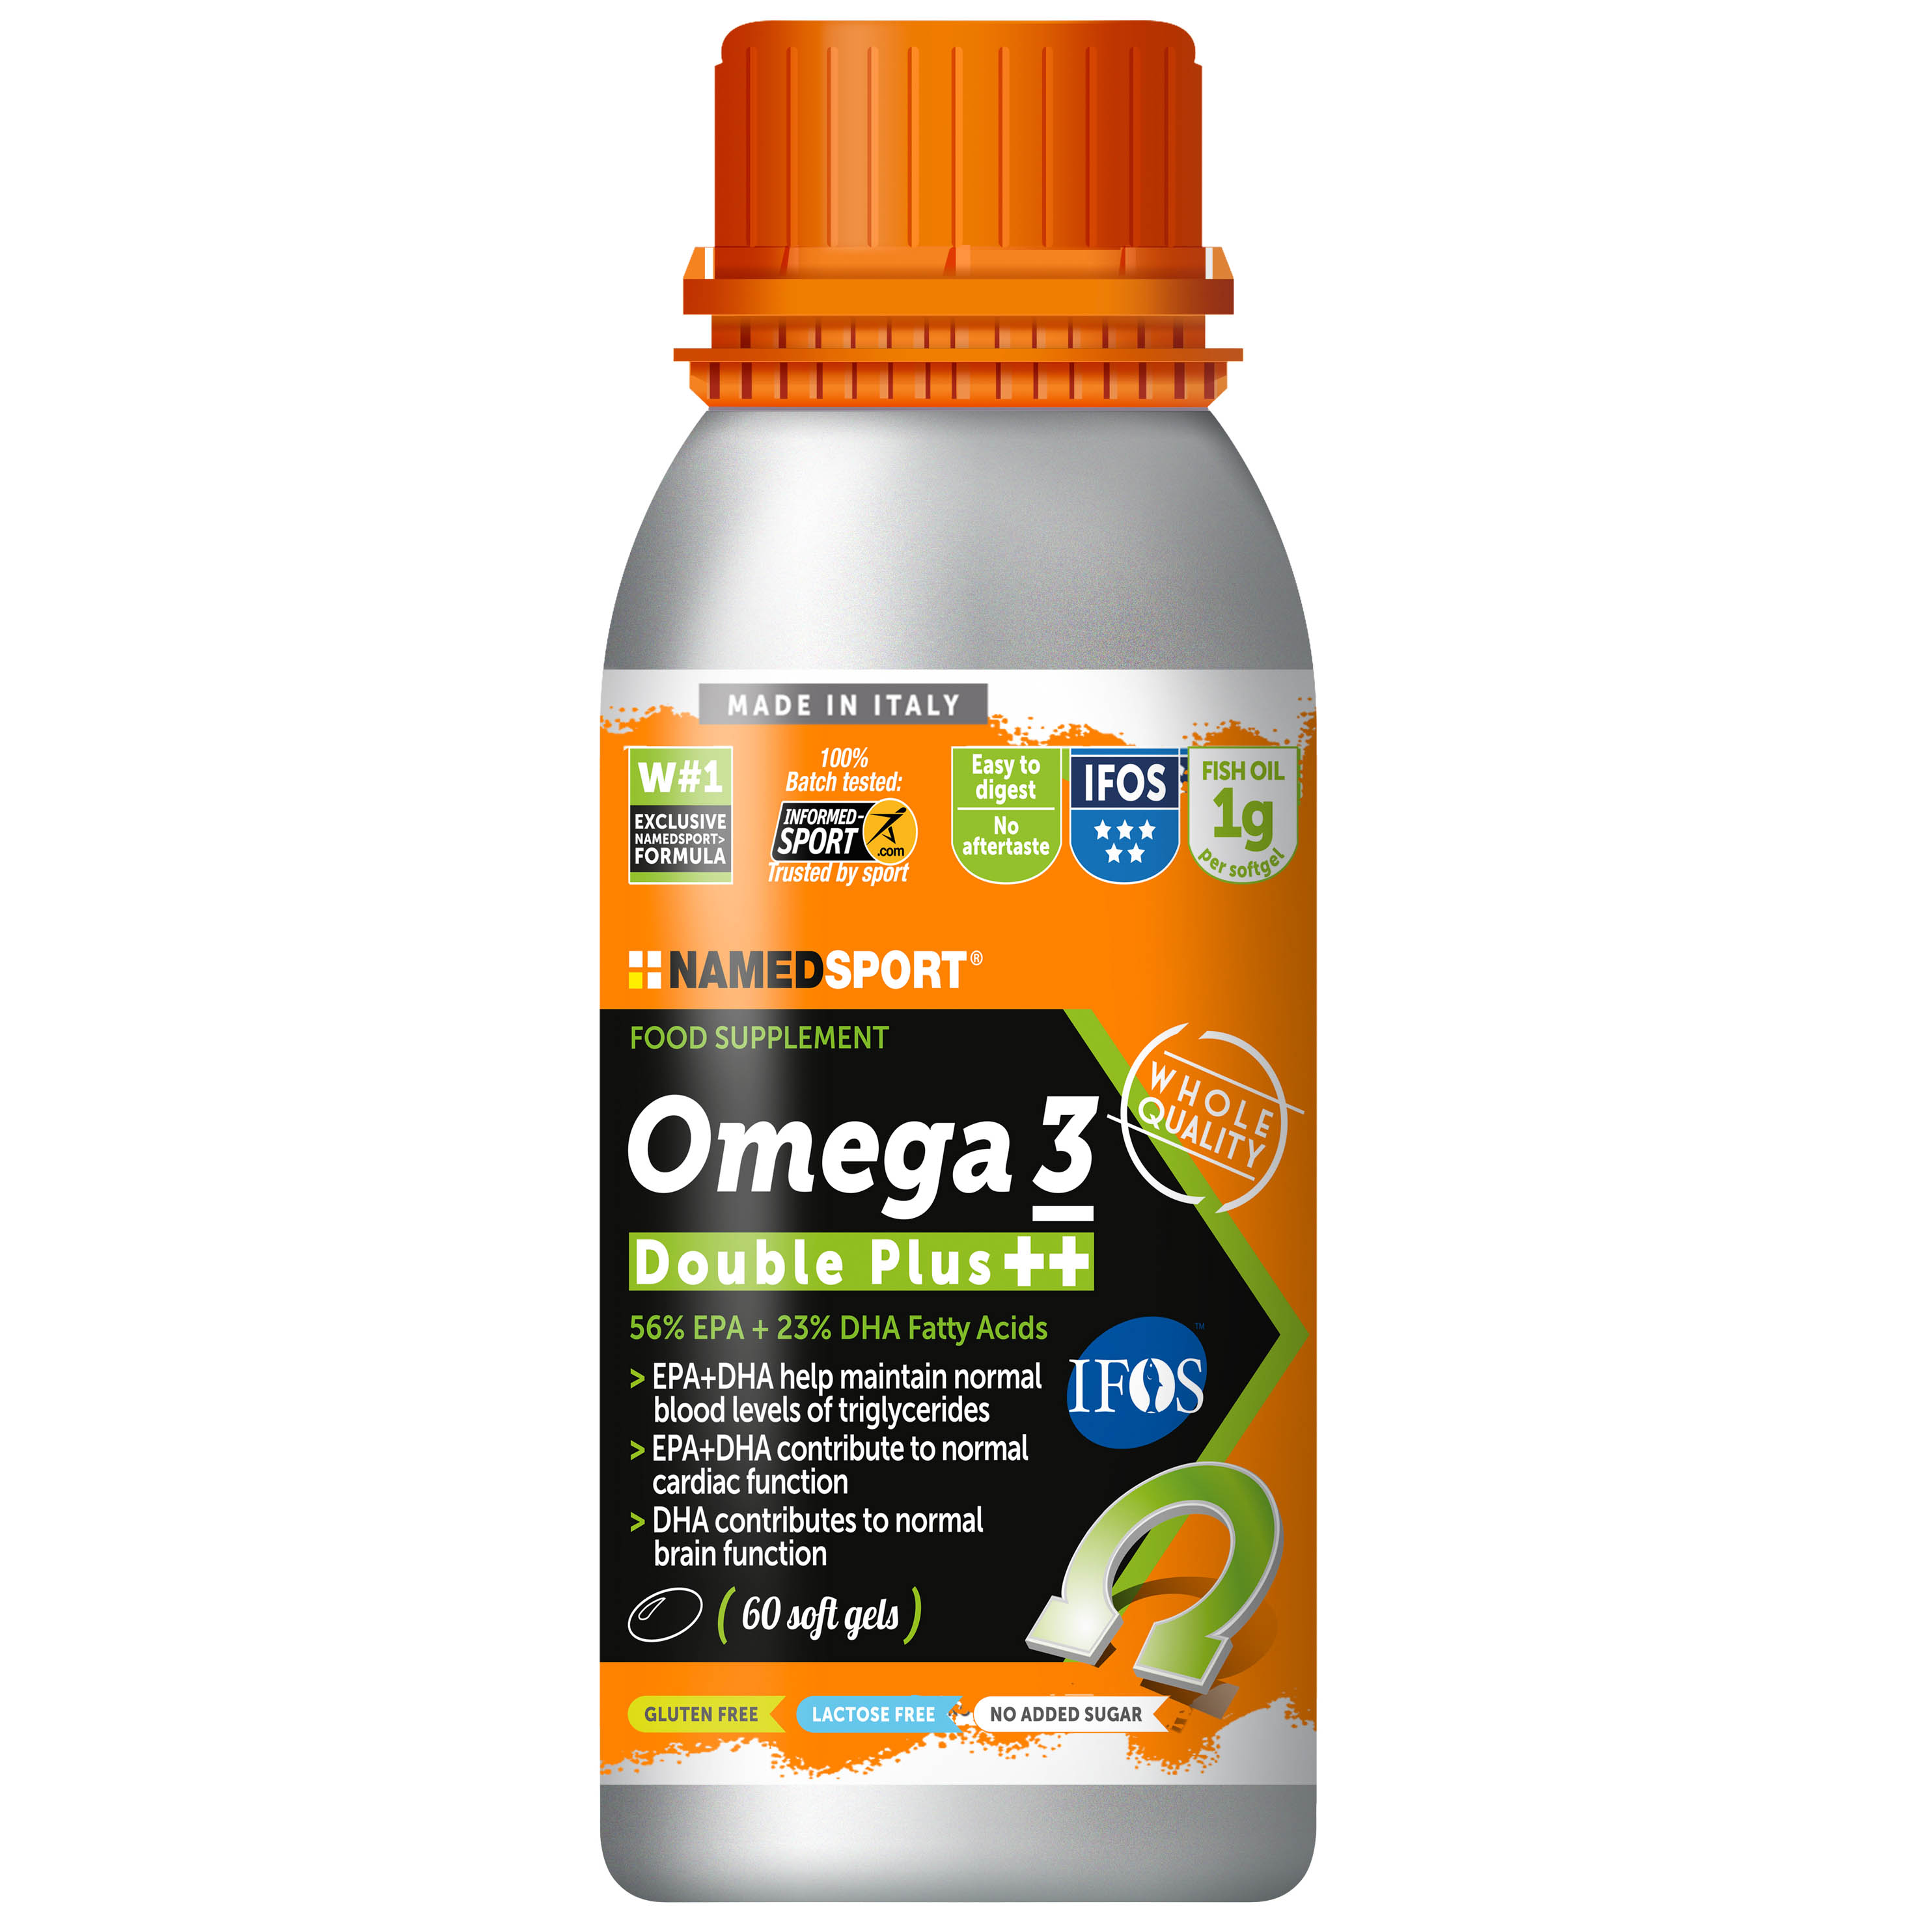 Ifos omega 3 žuvų taukai aukščiauia kokybė stipri sudėtis grynas naūralus 100% veiksmingas sertifikuotas maisto papildas minkštos kapsulės veiksmingas premium kokybė